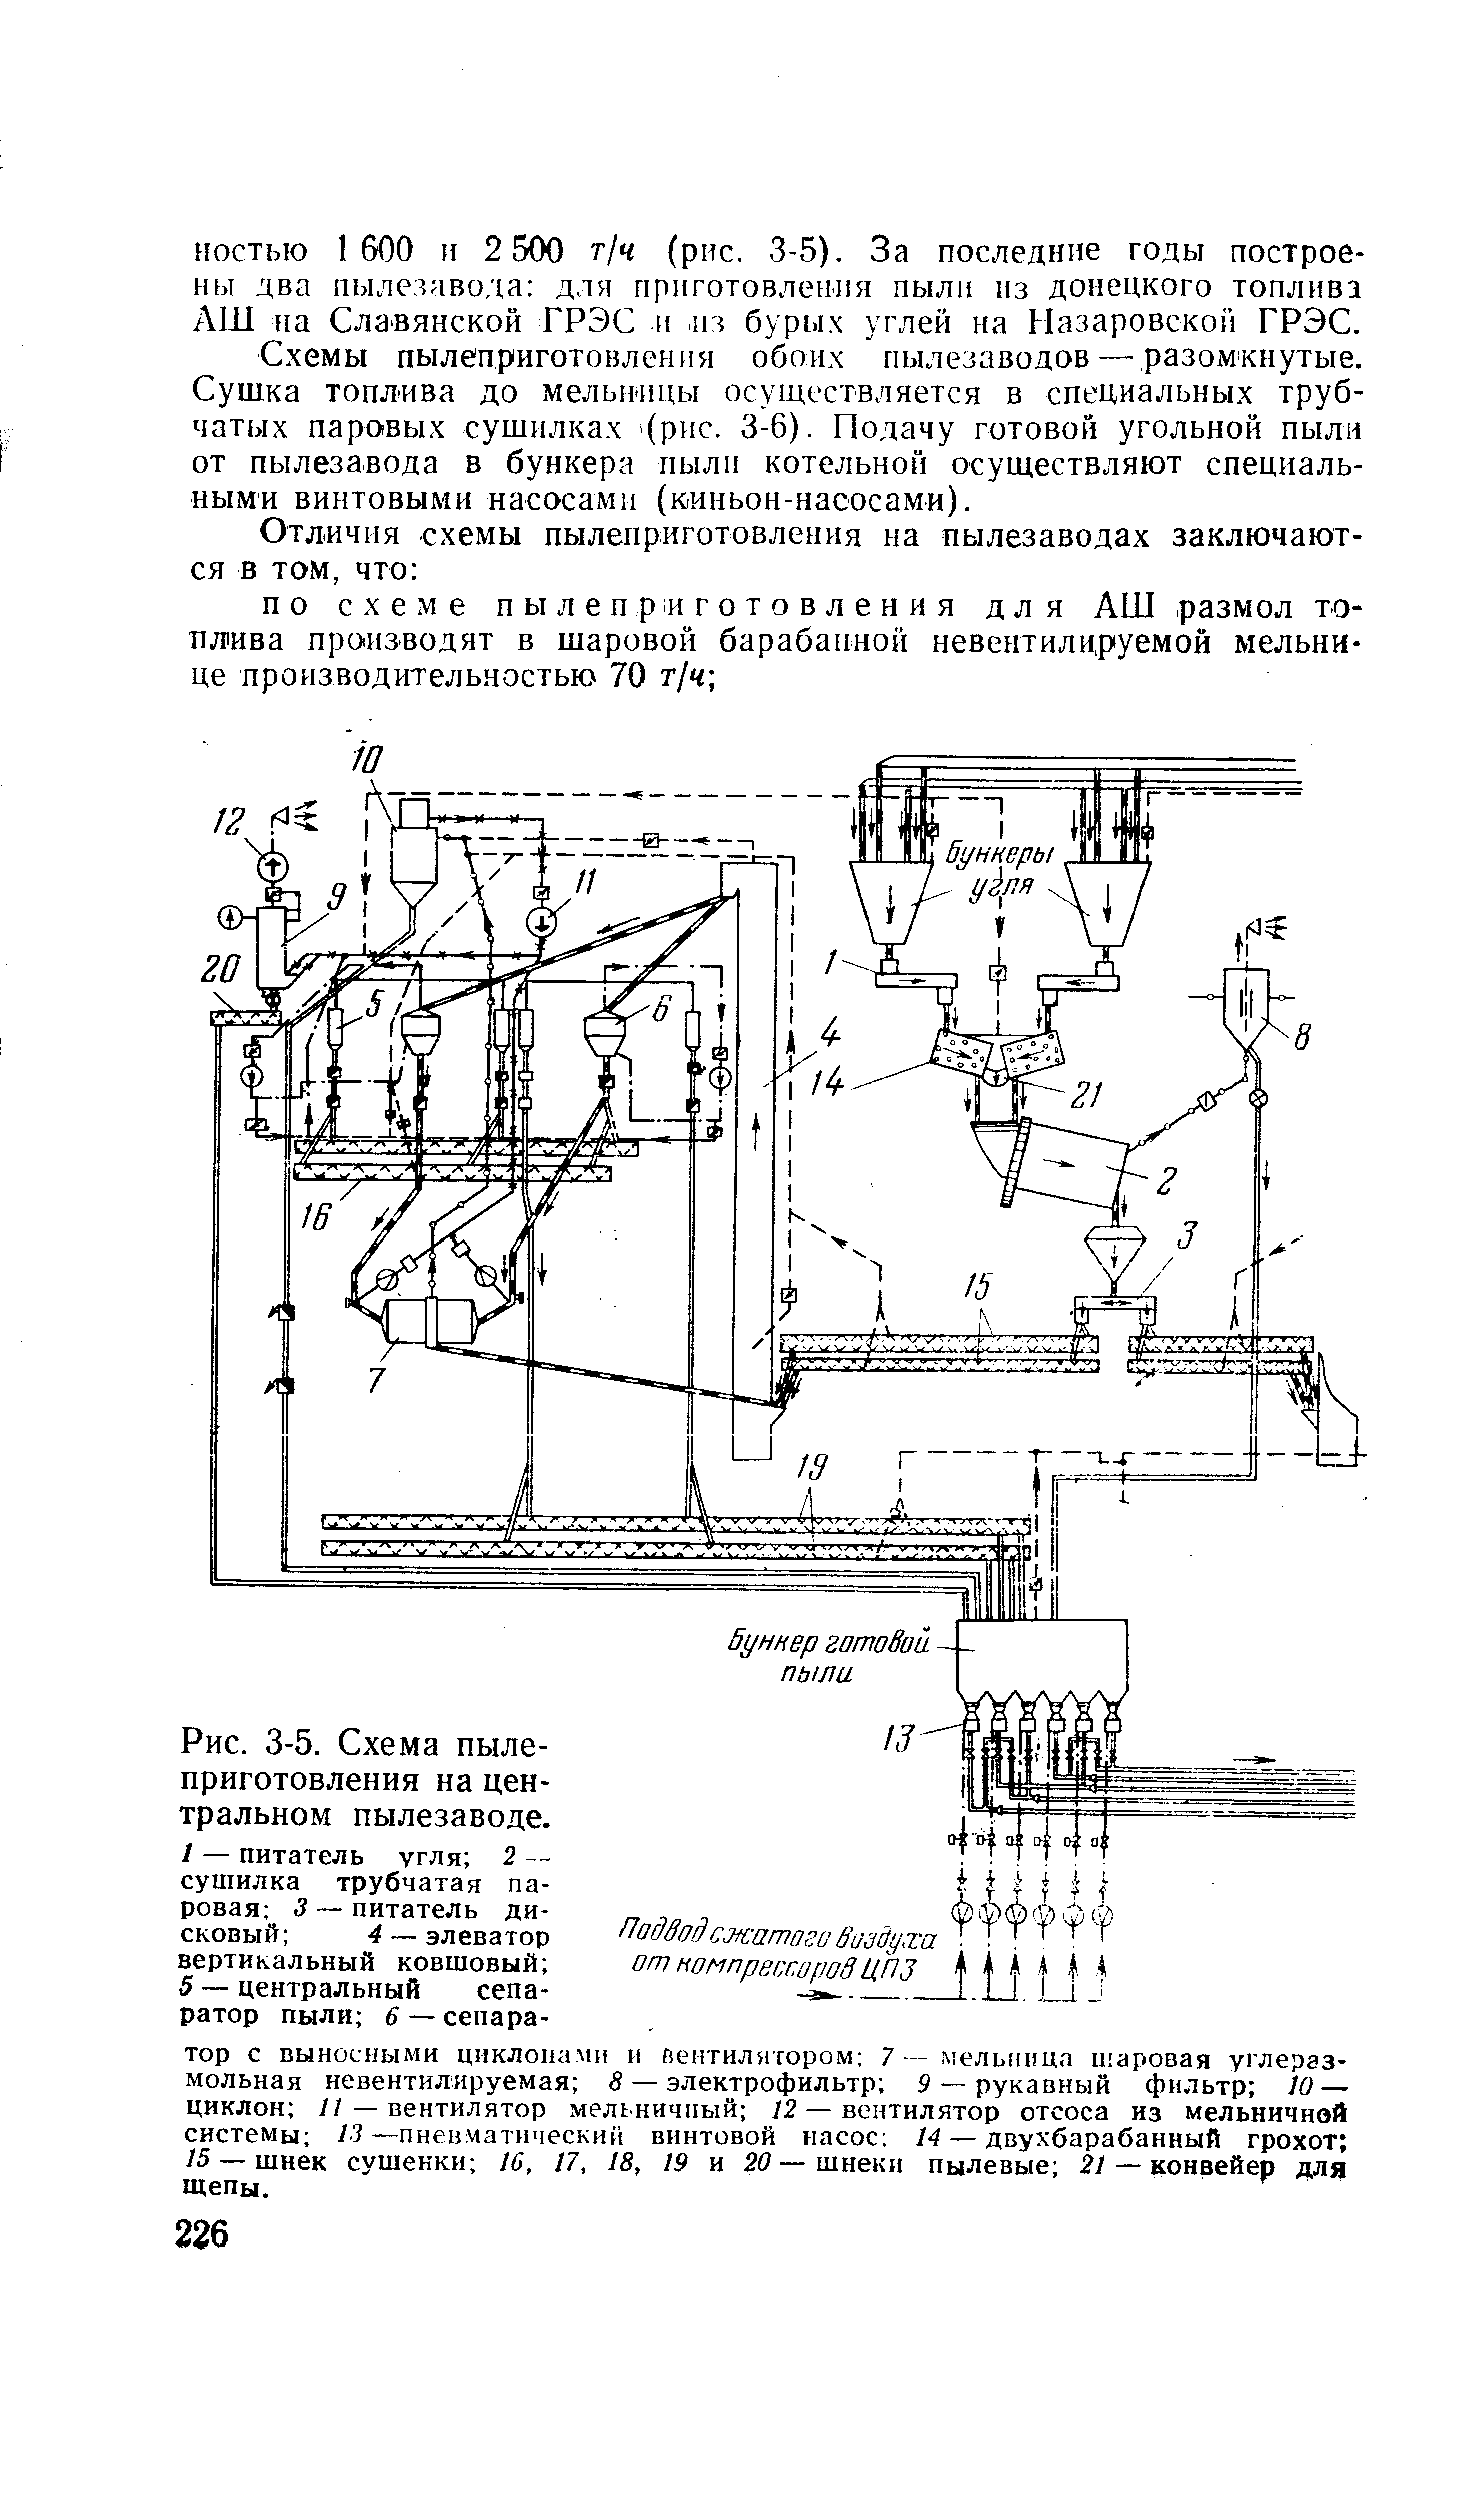 Рис. 3-5. <a href="/info/107507">Схема пылеприготовления</a> на центральном пылезаводе.
